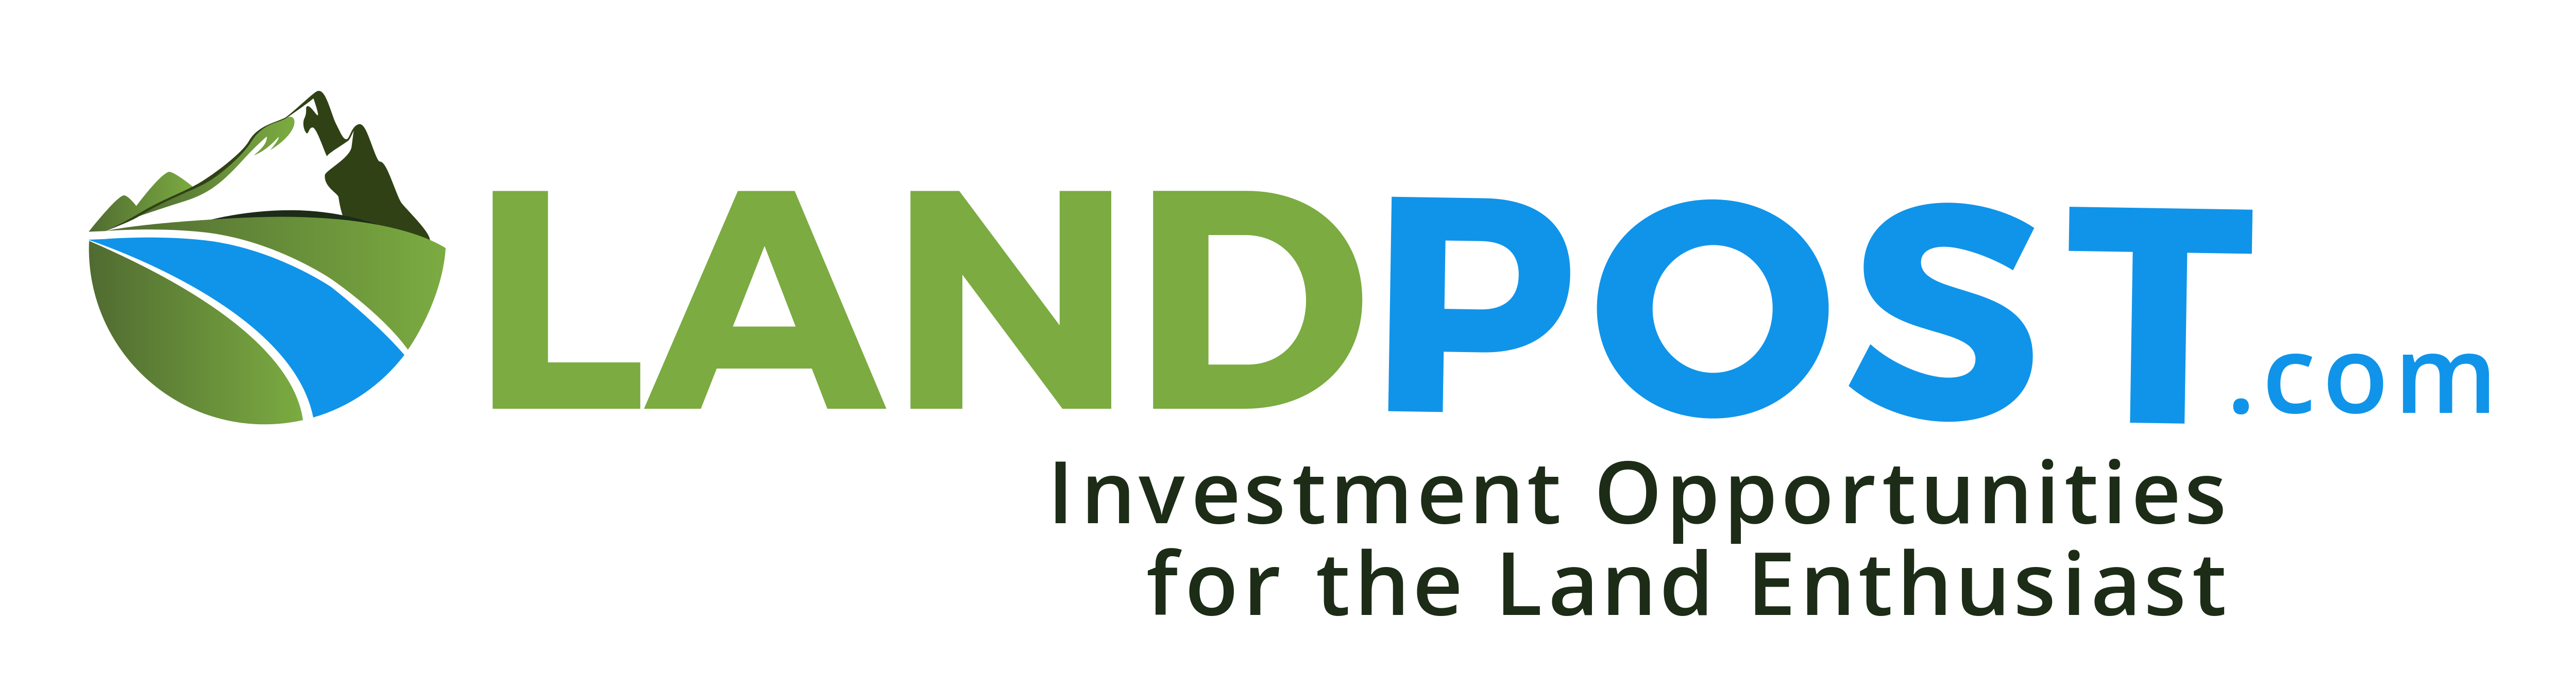 Land Post.com Logo